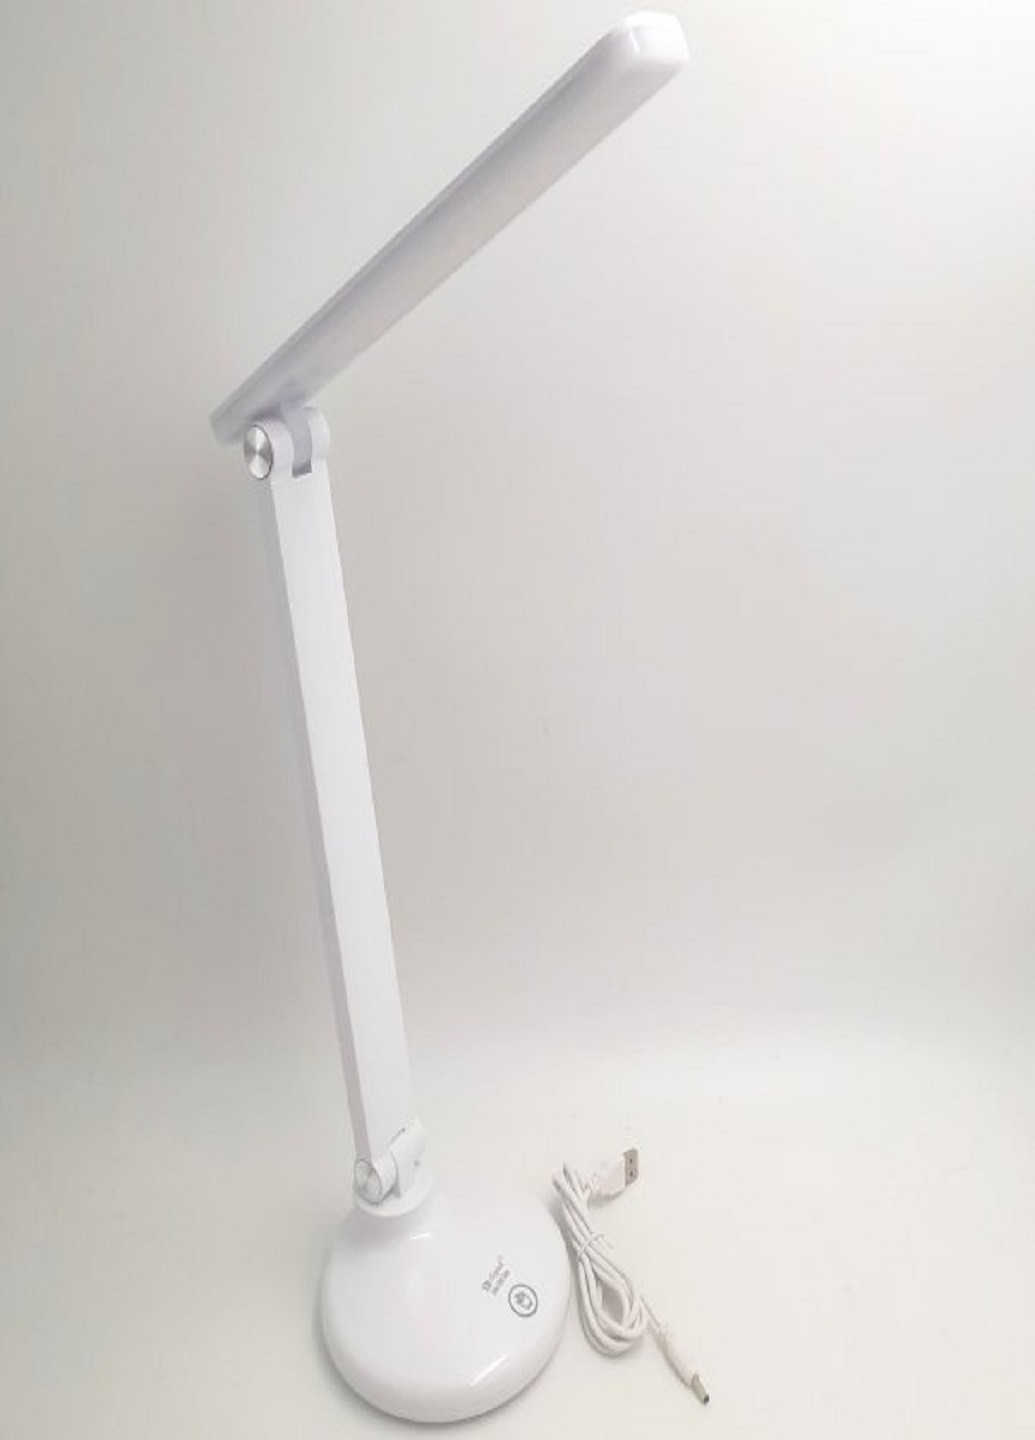 Настольная LED Лампа 40см сенсорная светодиодная 2,5W аккумуляторная Digad 1913 No Brand (257306824)